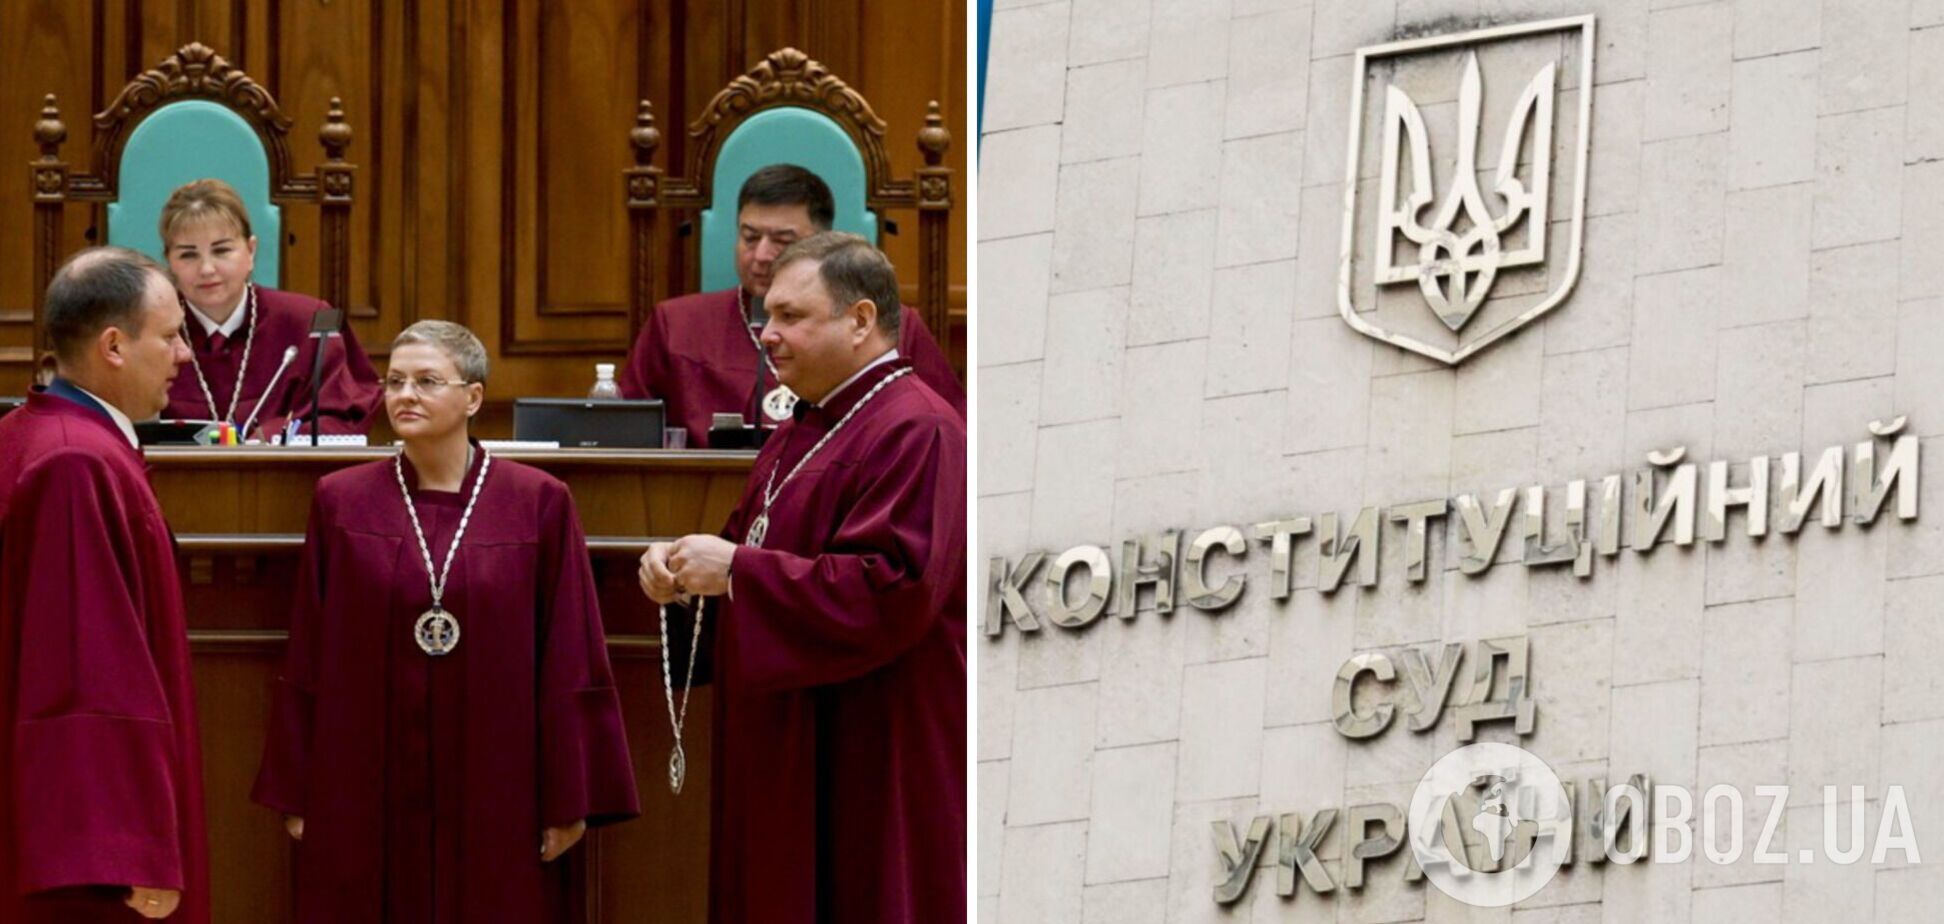 Троє суддів Конституційного Суду України пішли у відставку: названо прізвища